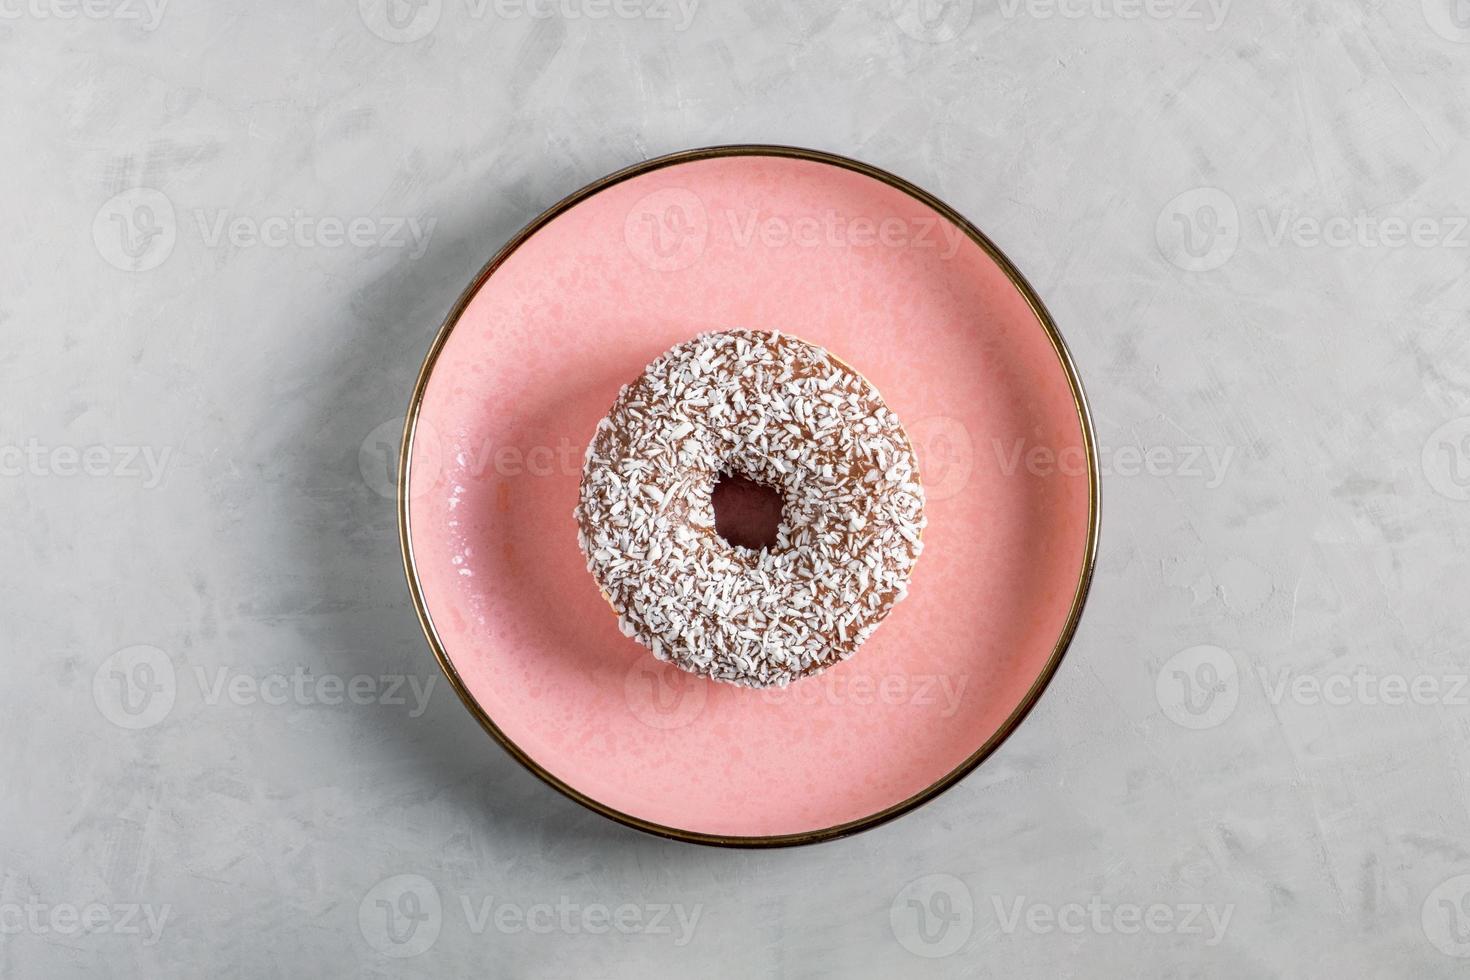 donut con cobertura de coco se encuentra en un plato de cerámica rosa foto